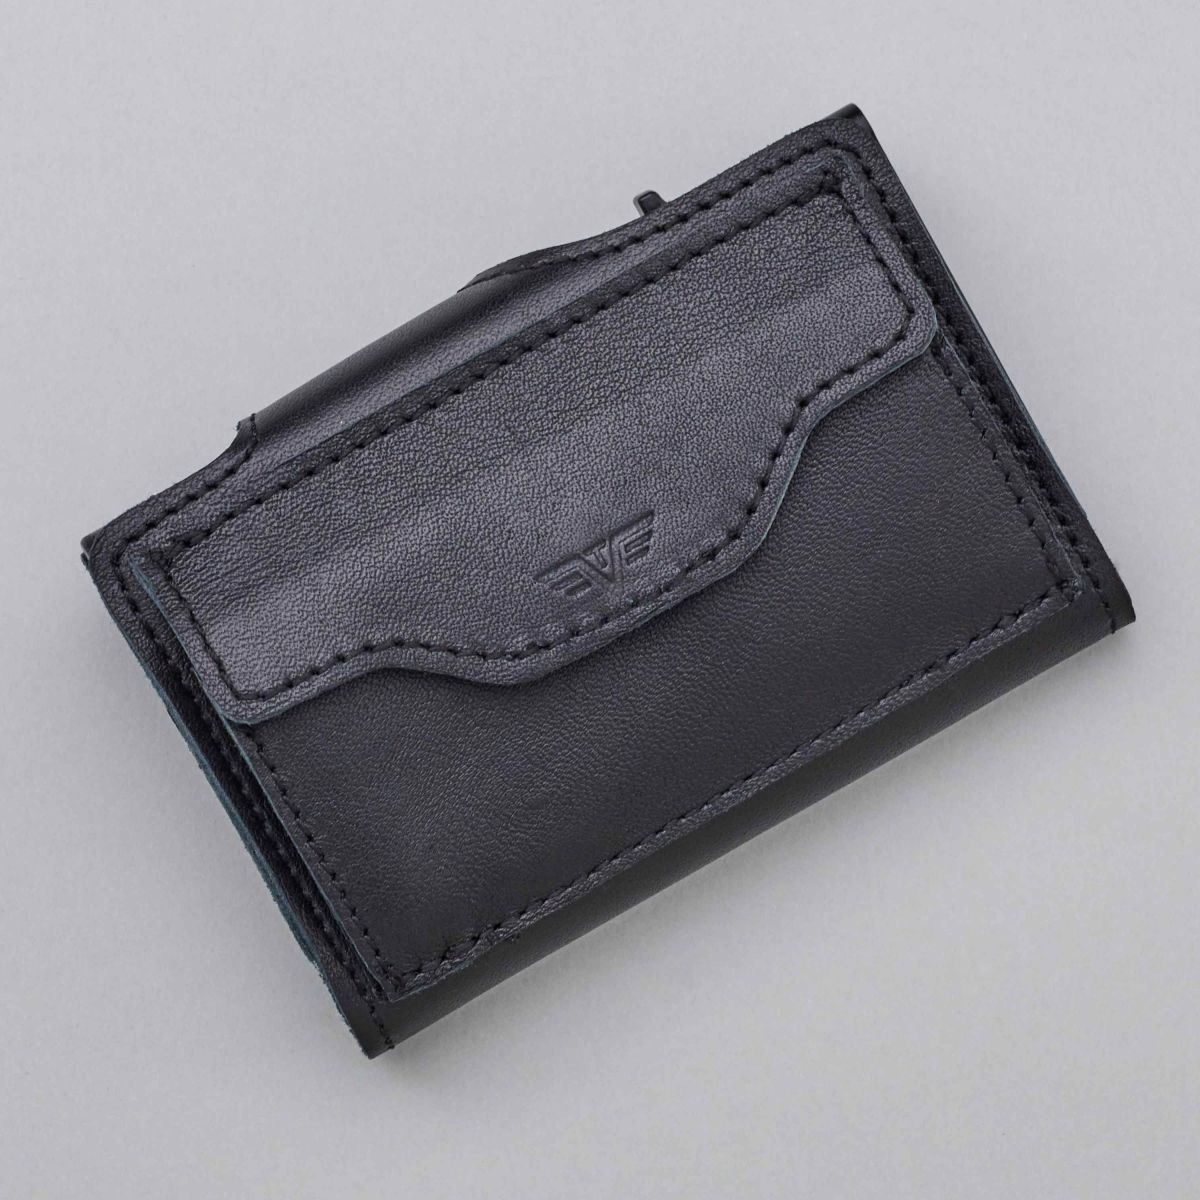 TRU VIRTU Click n Slide Wallet With Coin Pocket - Black